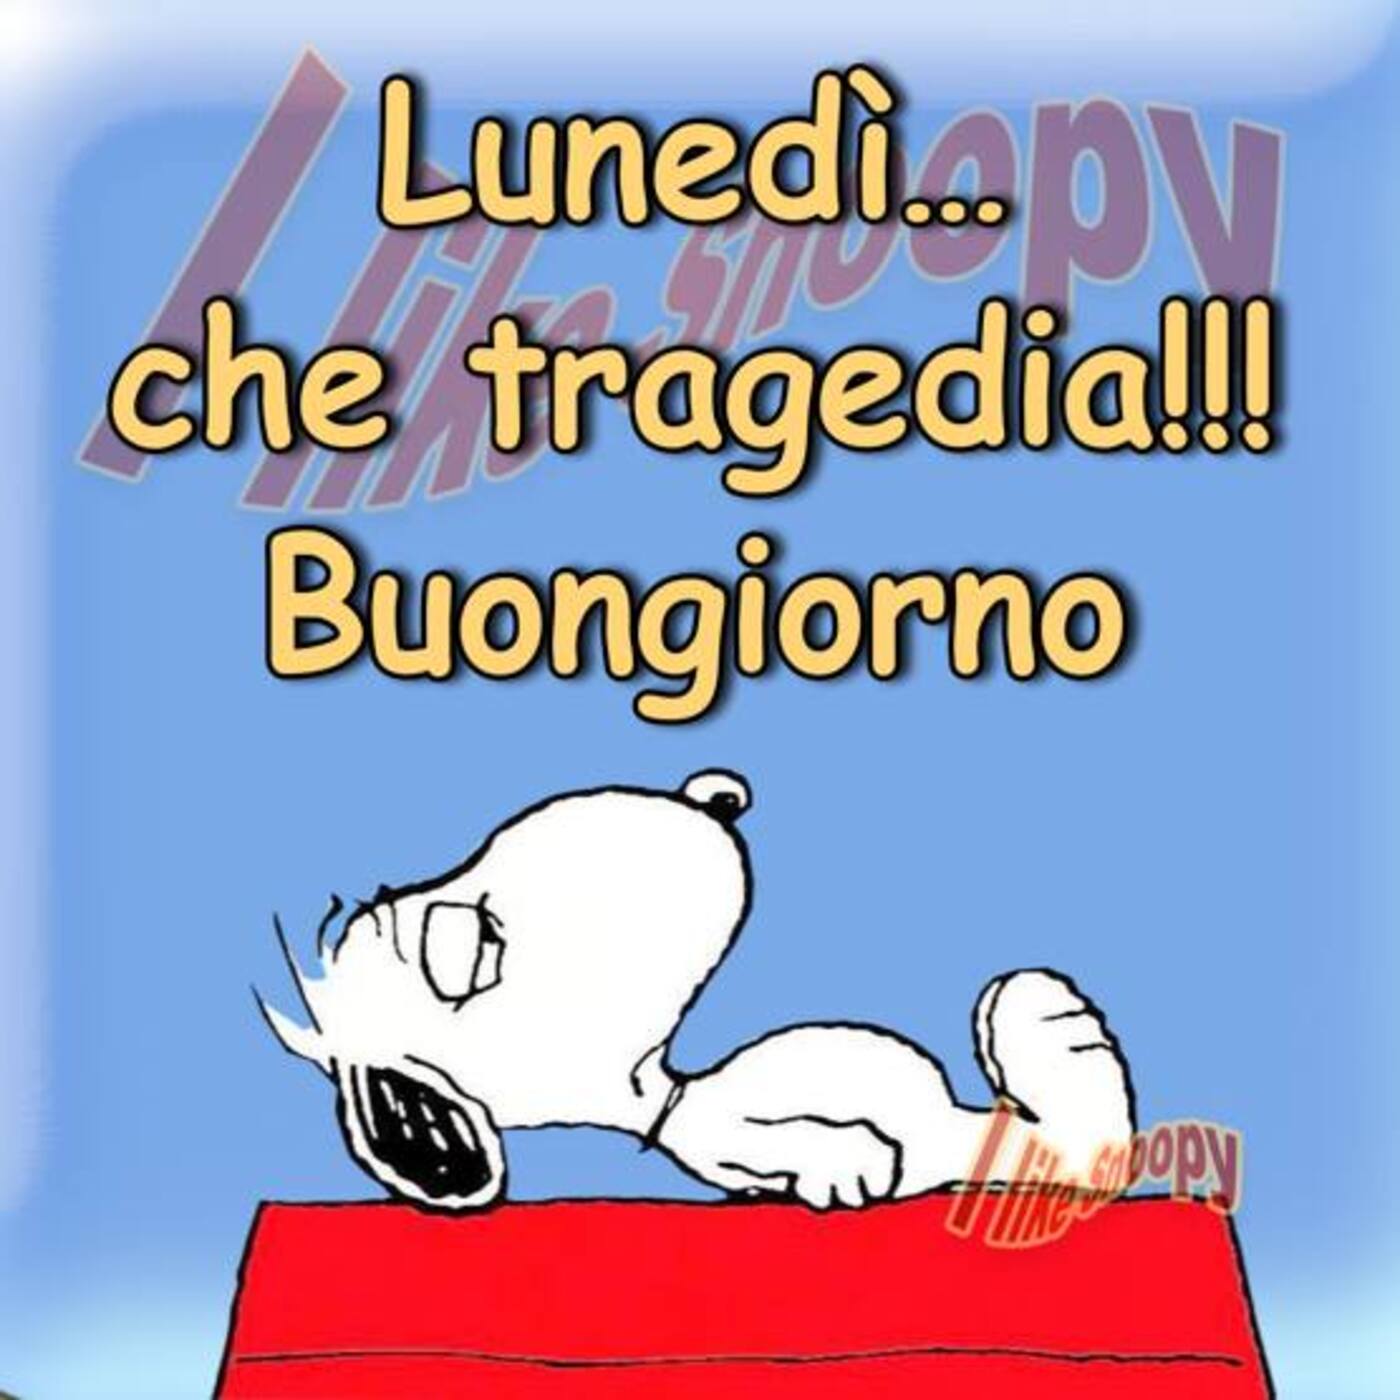 Lunedì... che tragedia!!! Buongiorno (Snoopy)